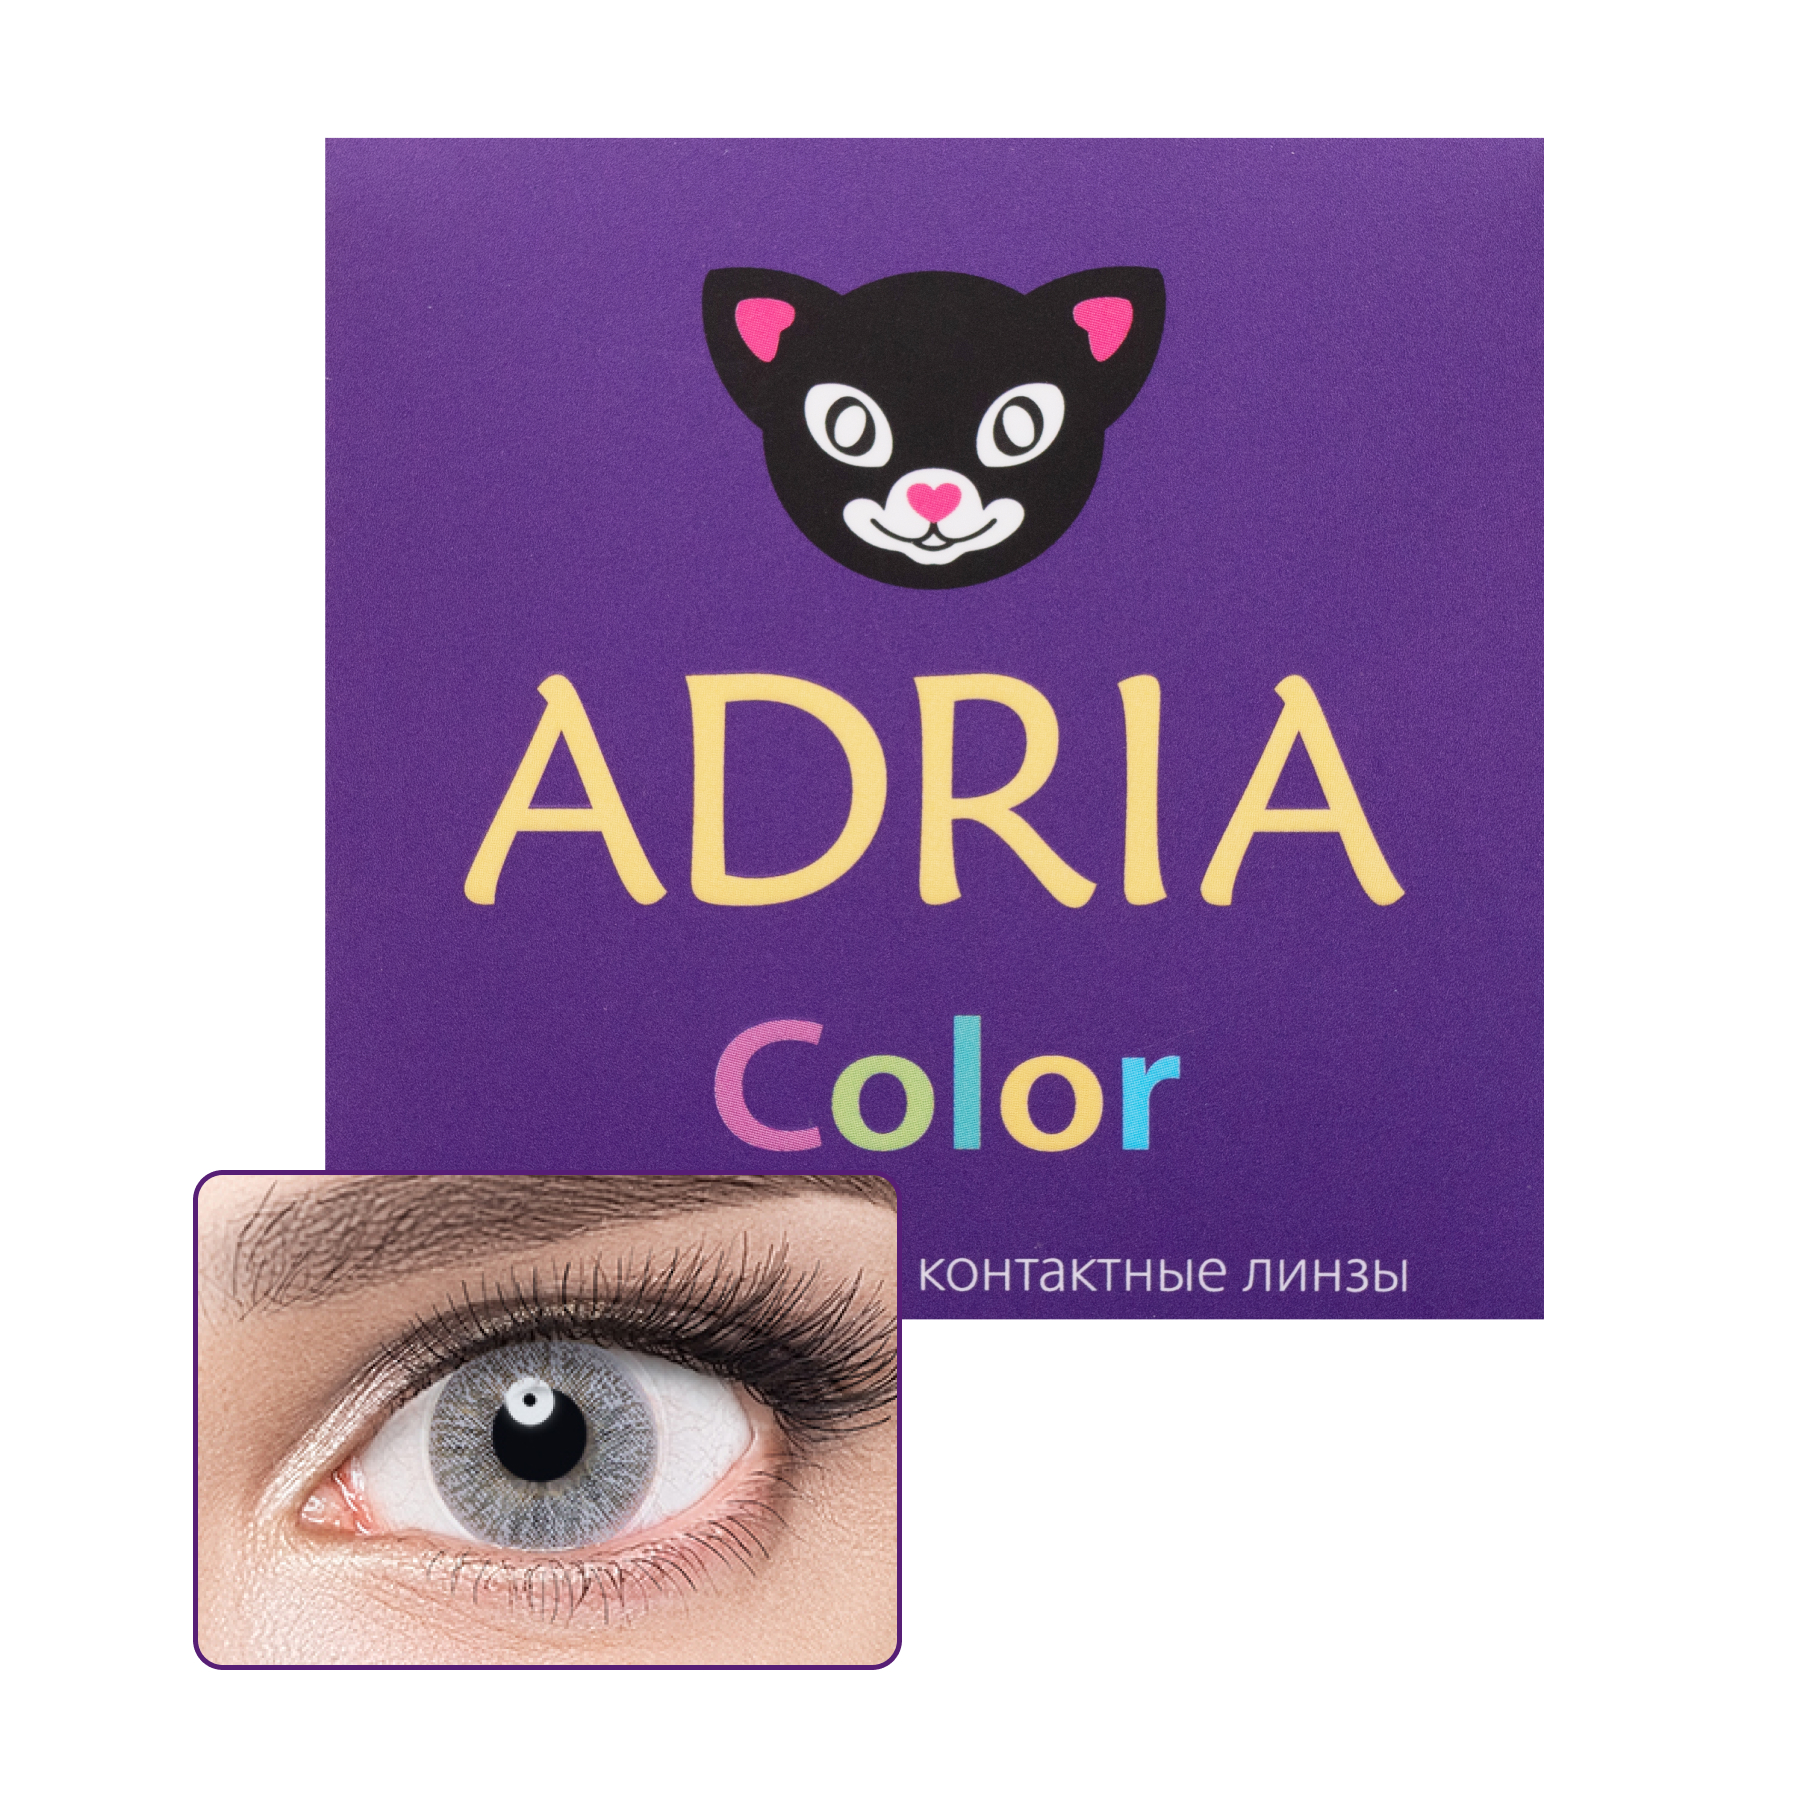 COLOR 1 TONE 2 линзы, Цветные контактные линзы Adria 1T 2 pack PWR -9, 50, R 8.6, Gray, серые  - купить